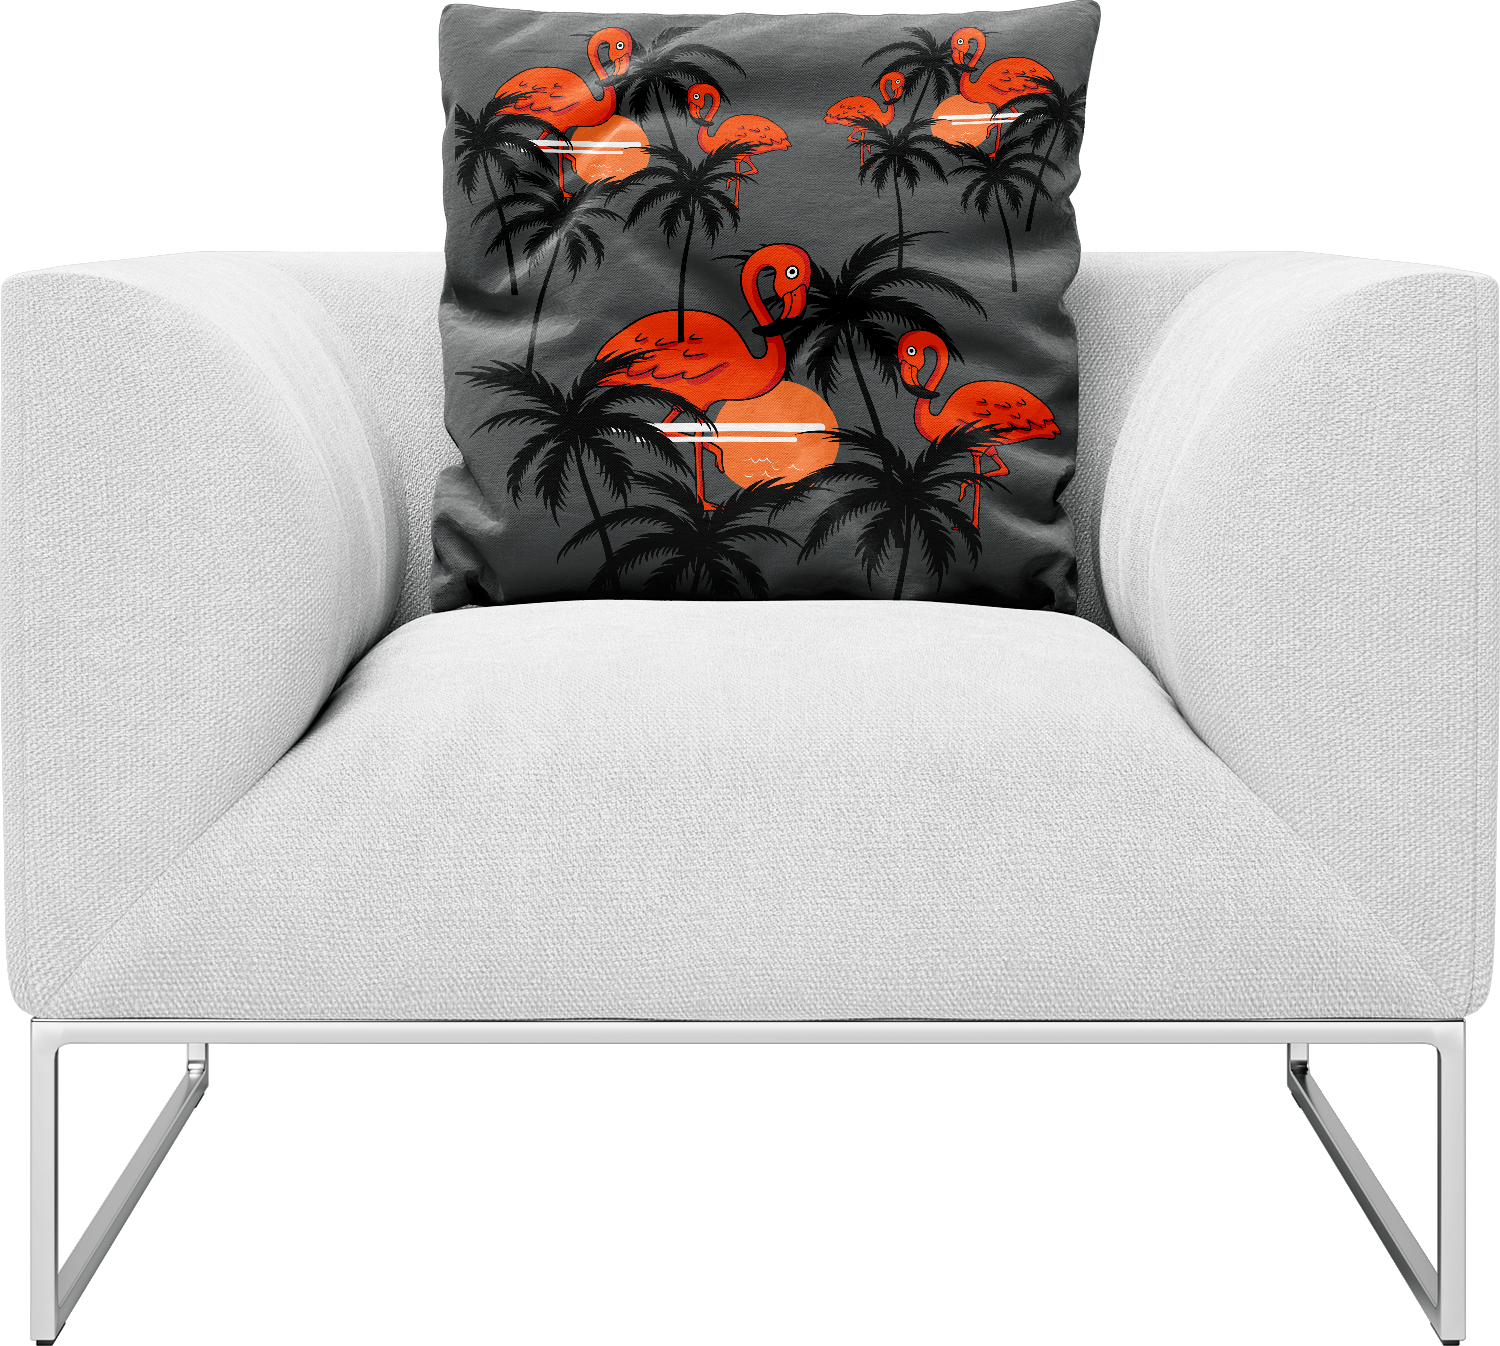 Miami Vice Pillows Cushions - fungear.com.au